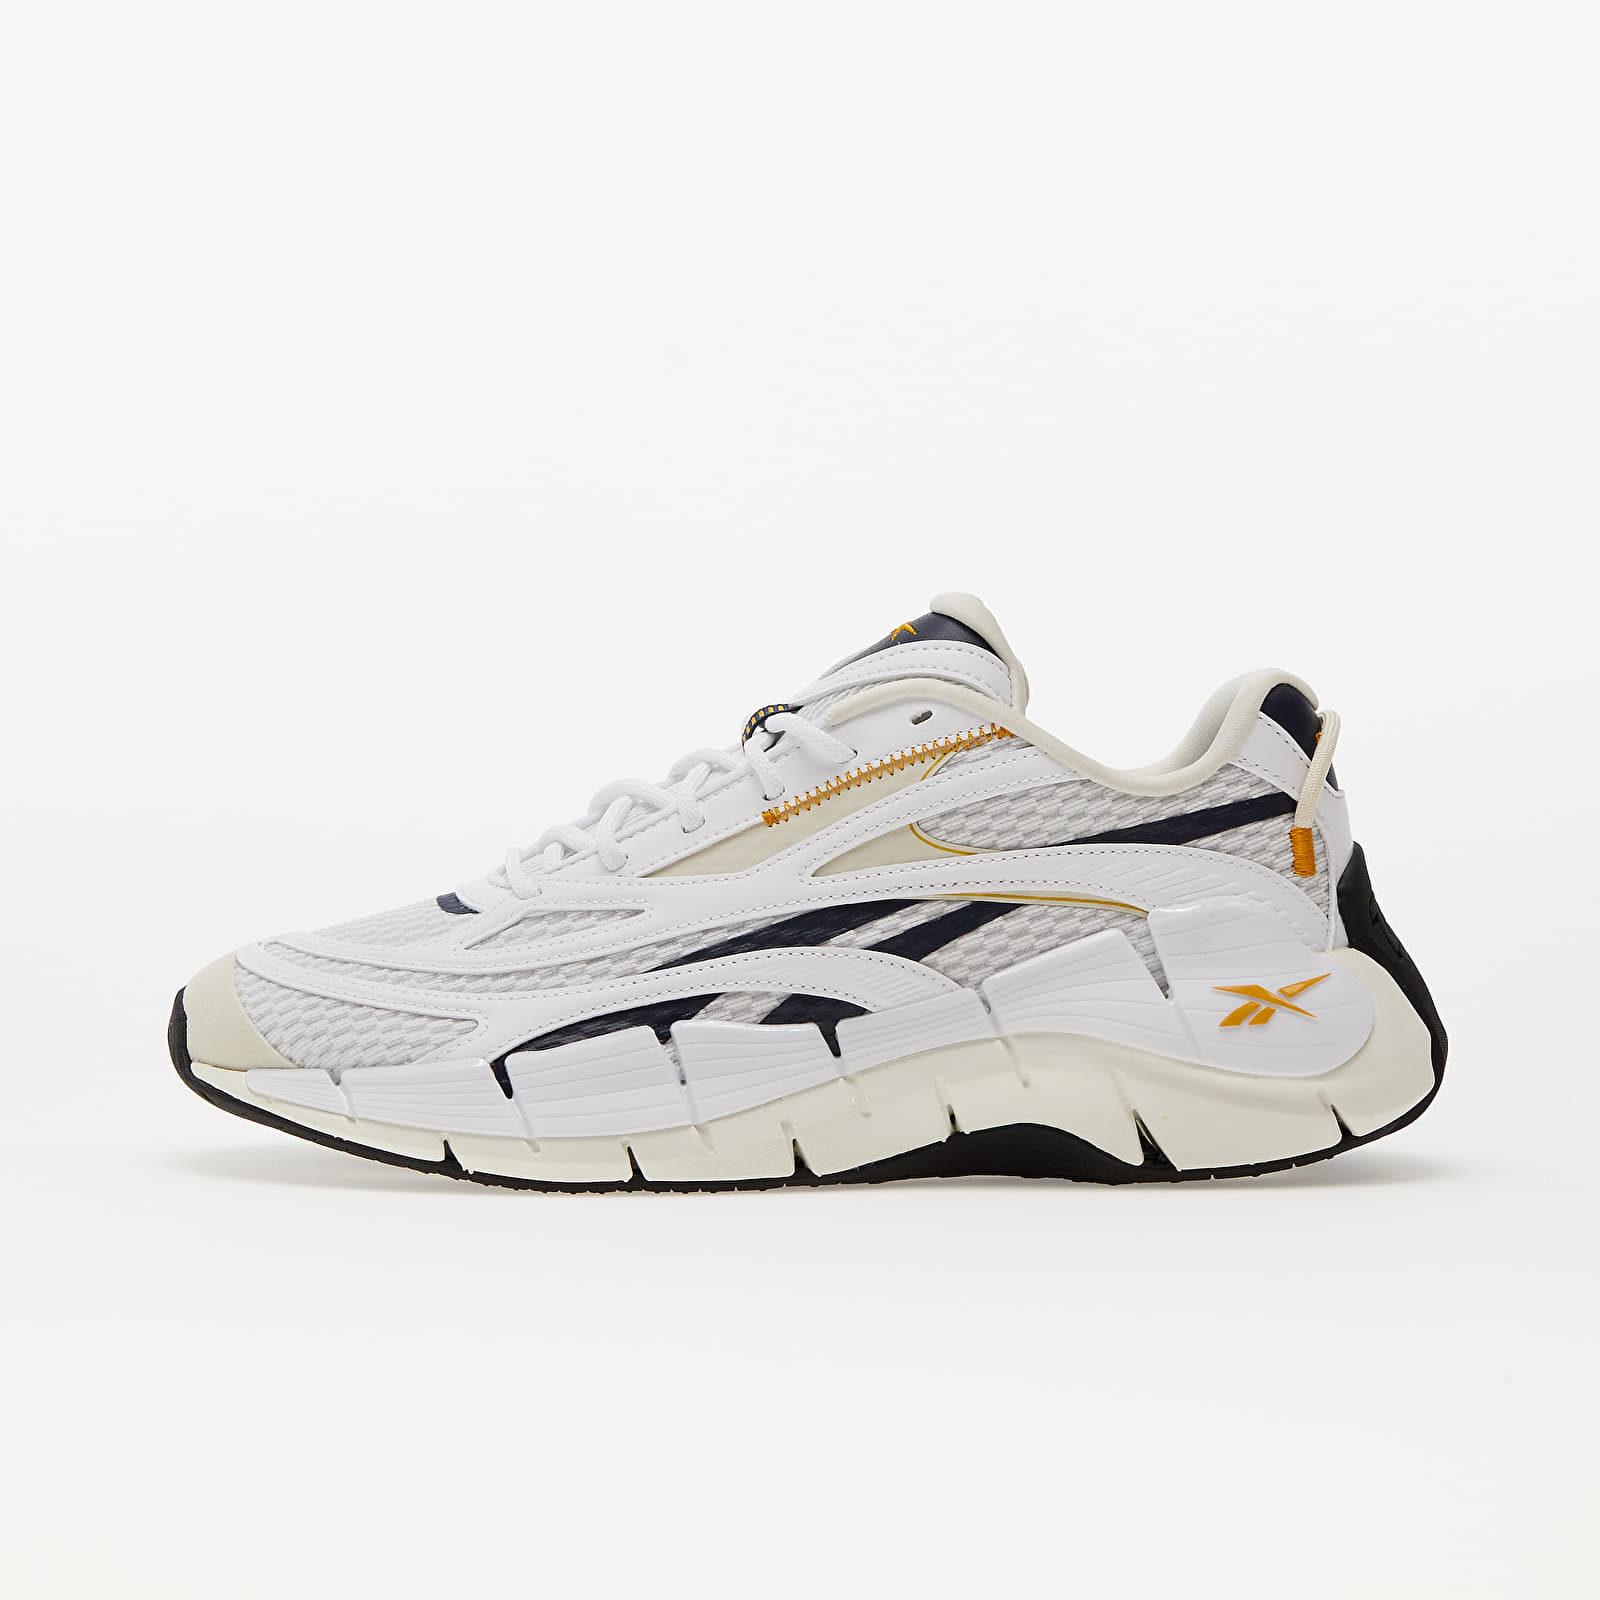 Herren Sneaker und Schuhe Reebok Zig Kinetica 2.5 Pure Grey/ Vector Navy/ Ftwr White